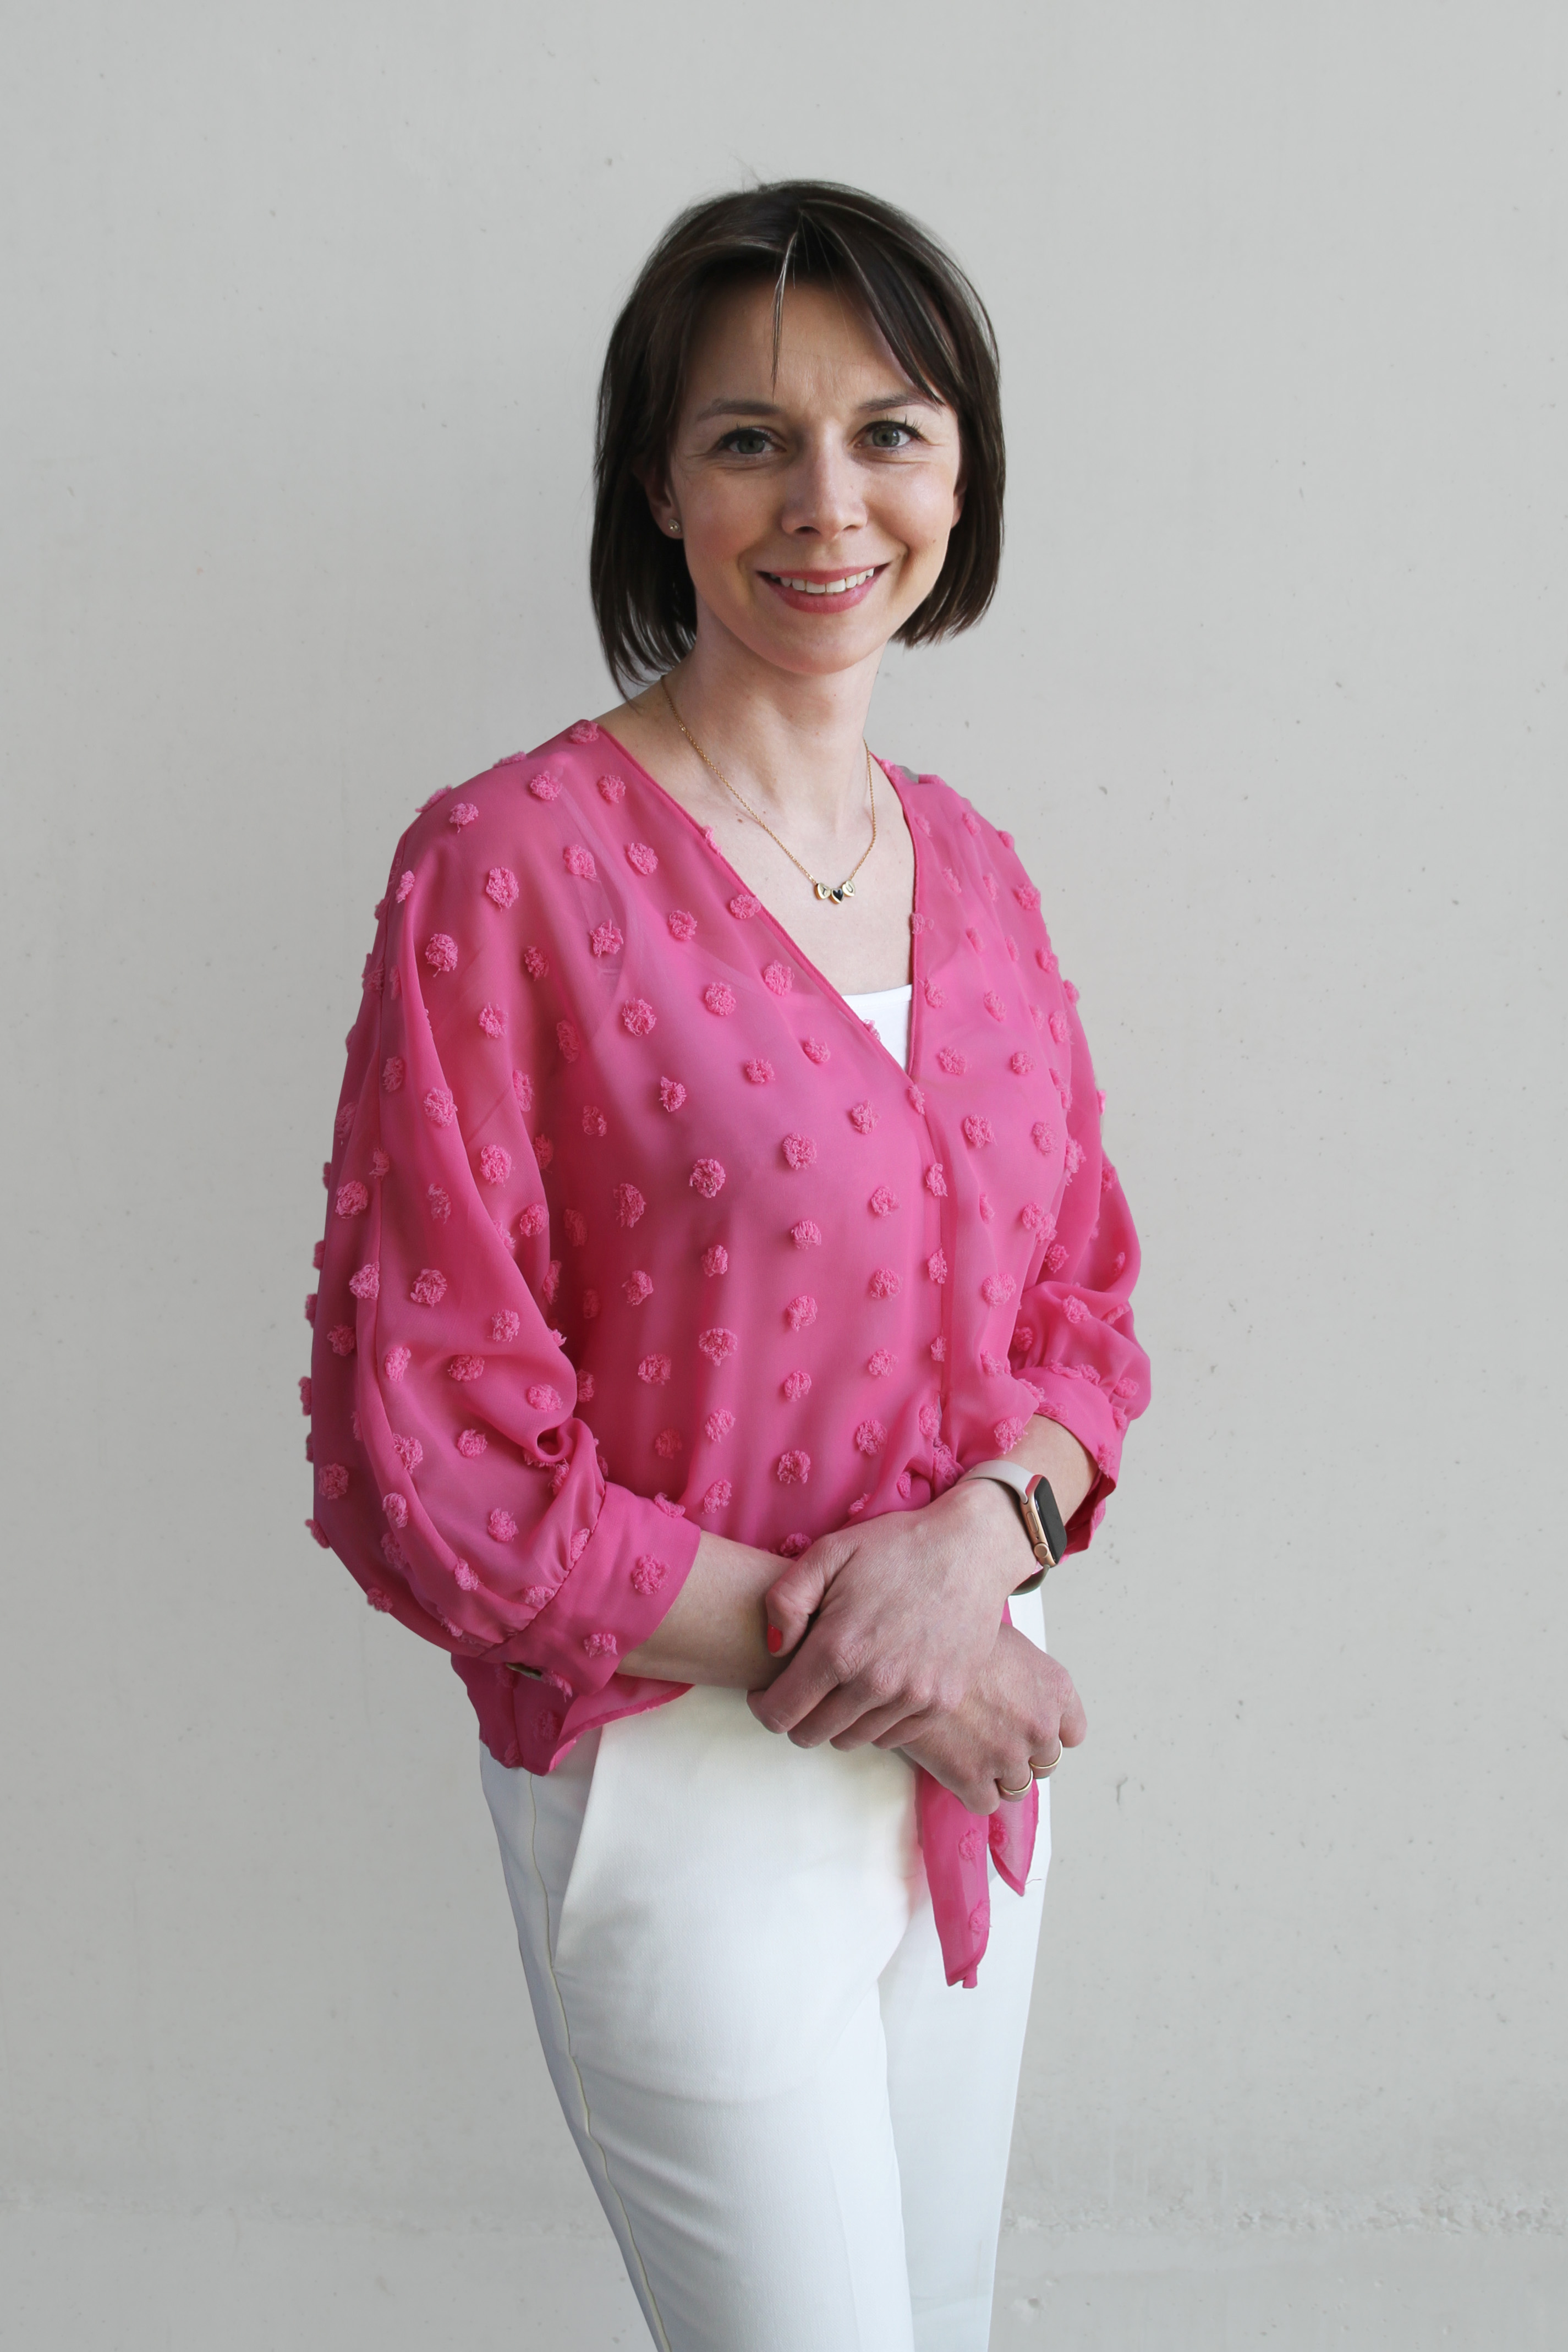 Dr Anna Górska